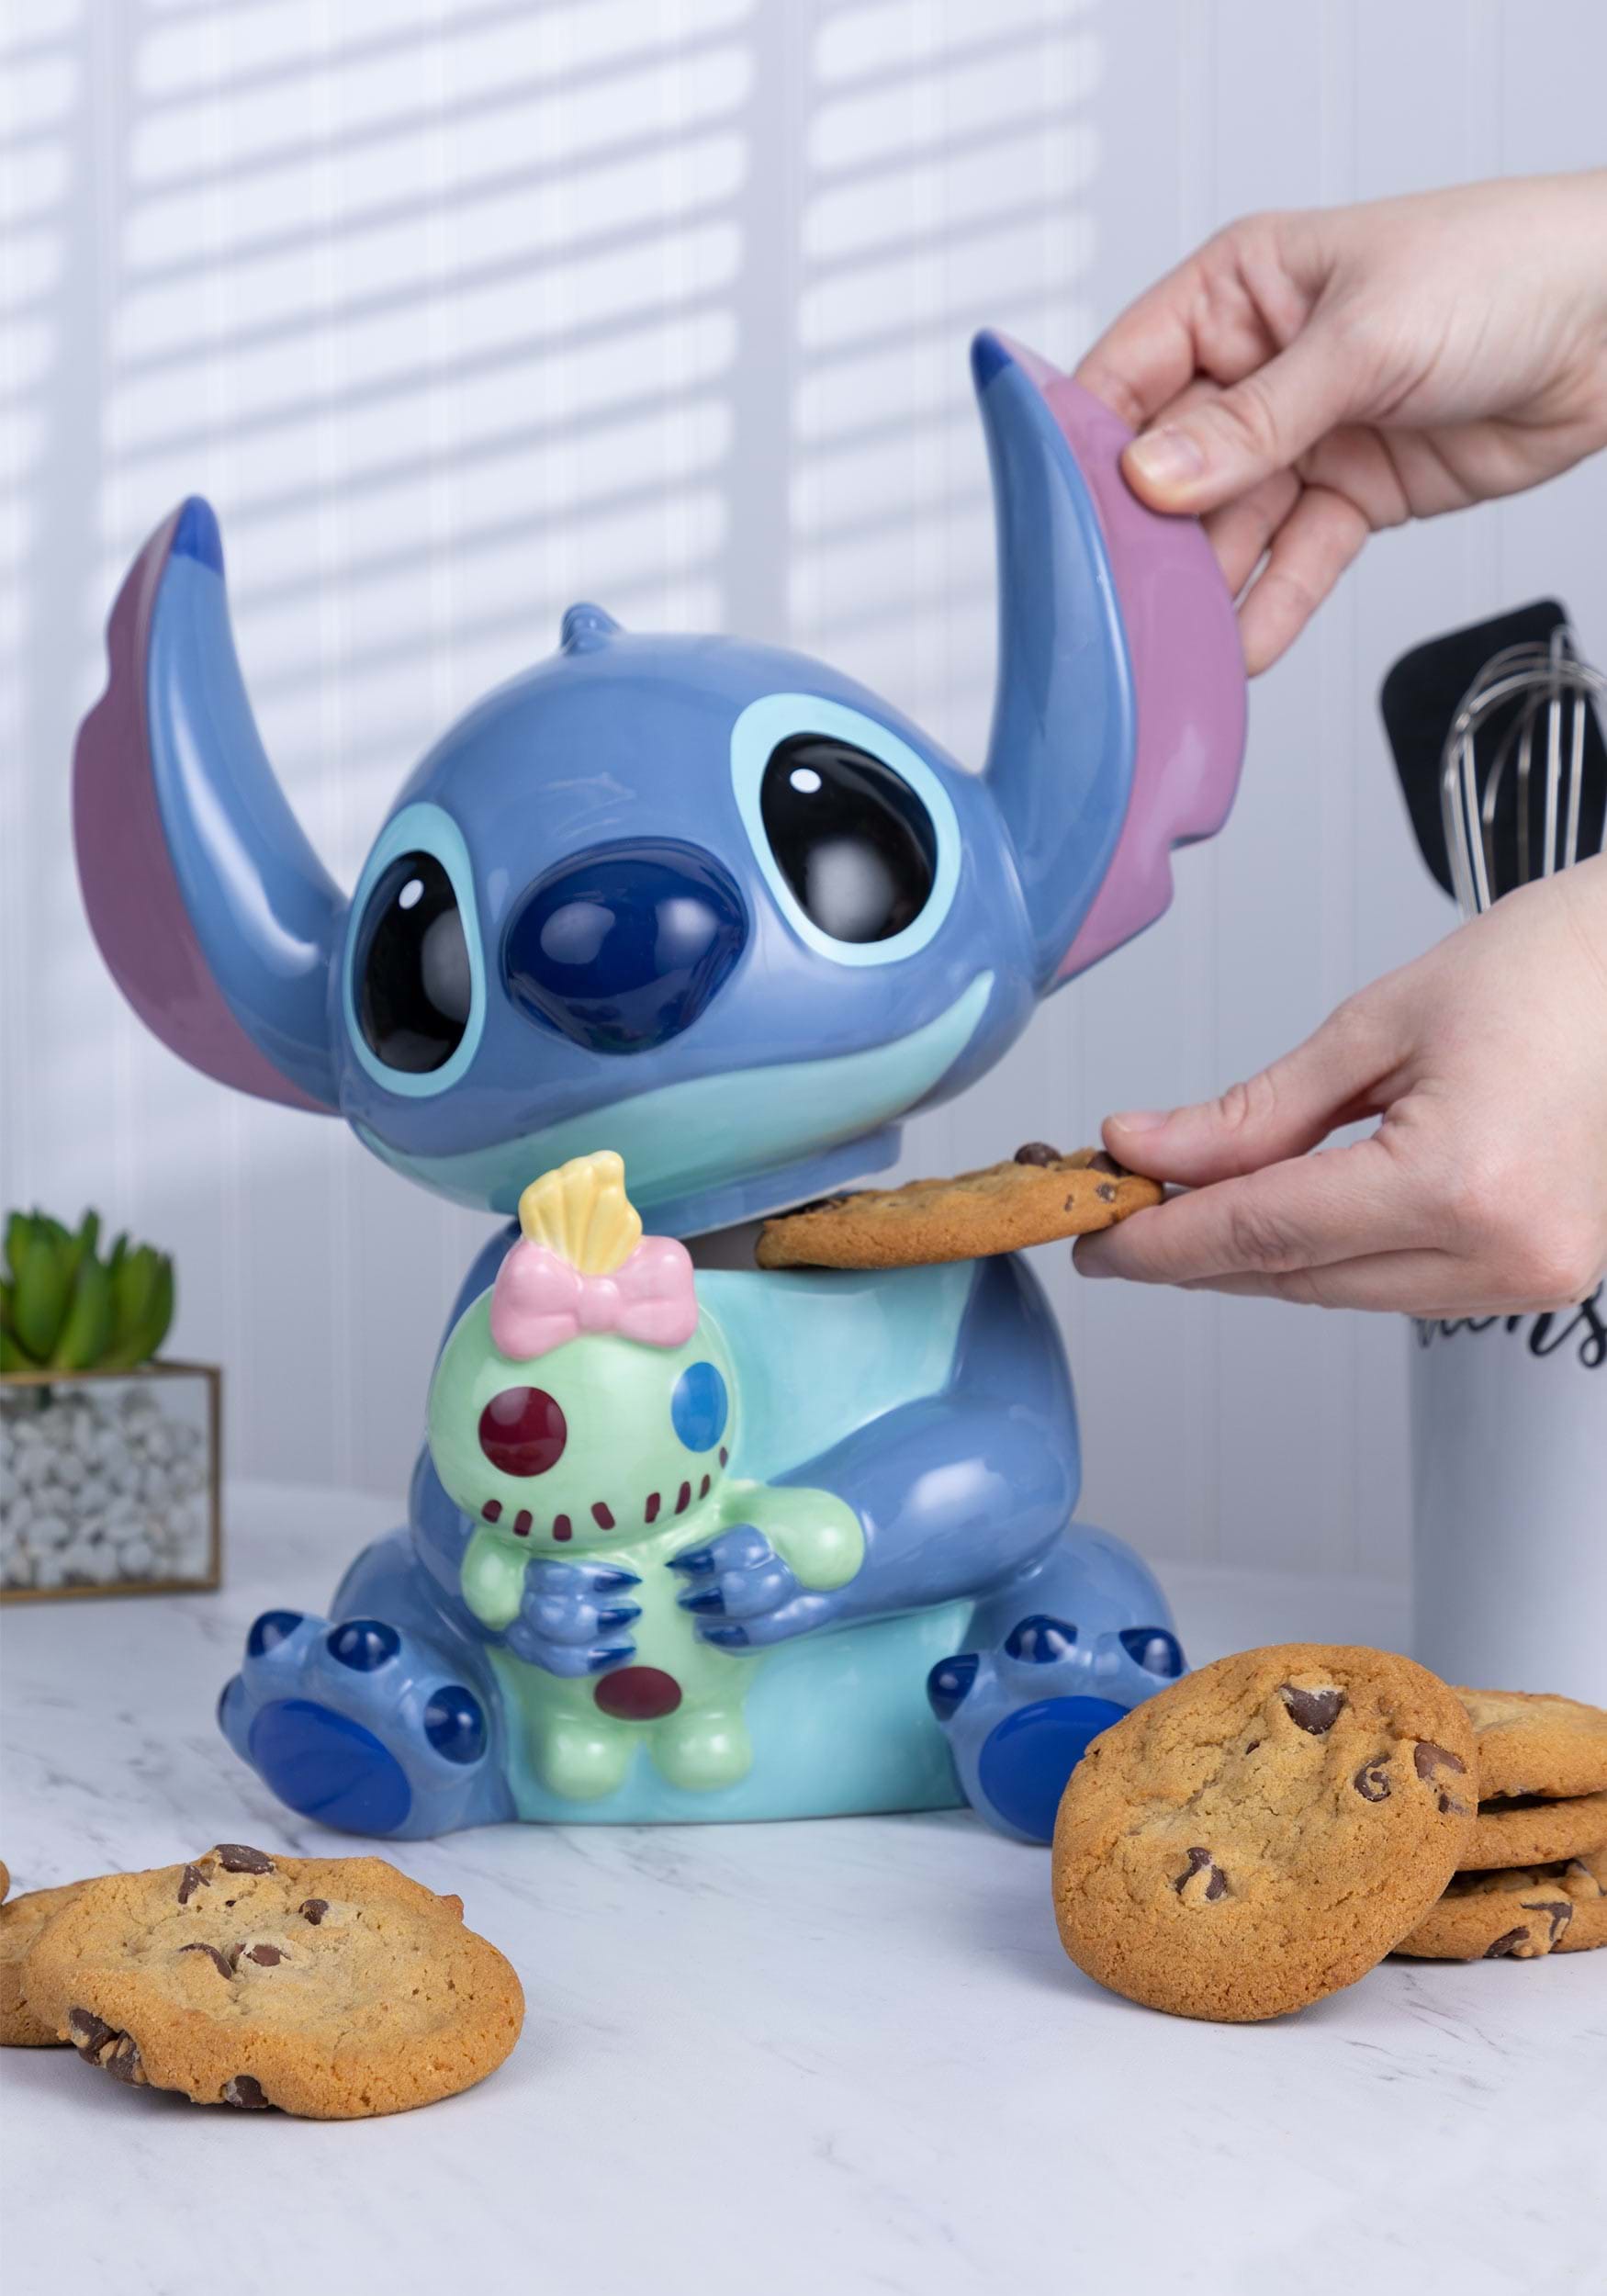 Disney Lilo & Stitch Movie Stitch Figure with Doll Ceramic Cookie